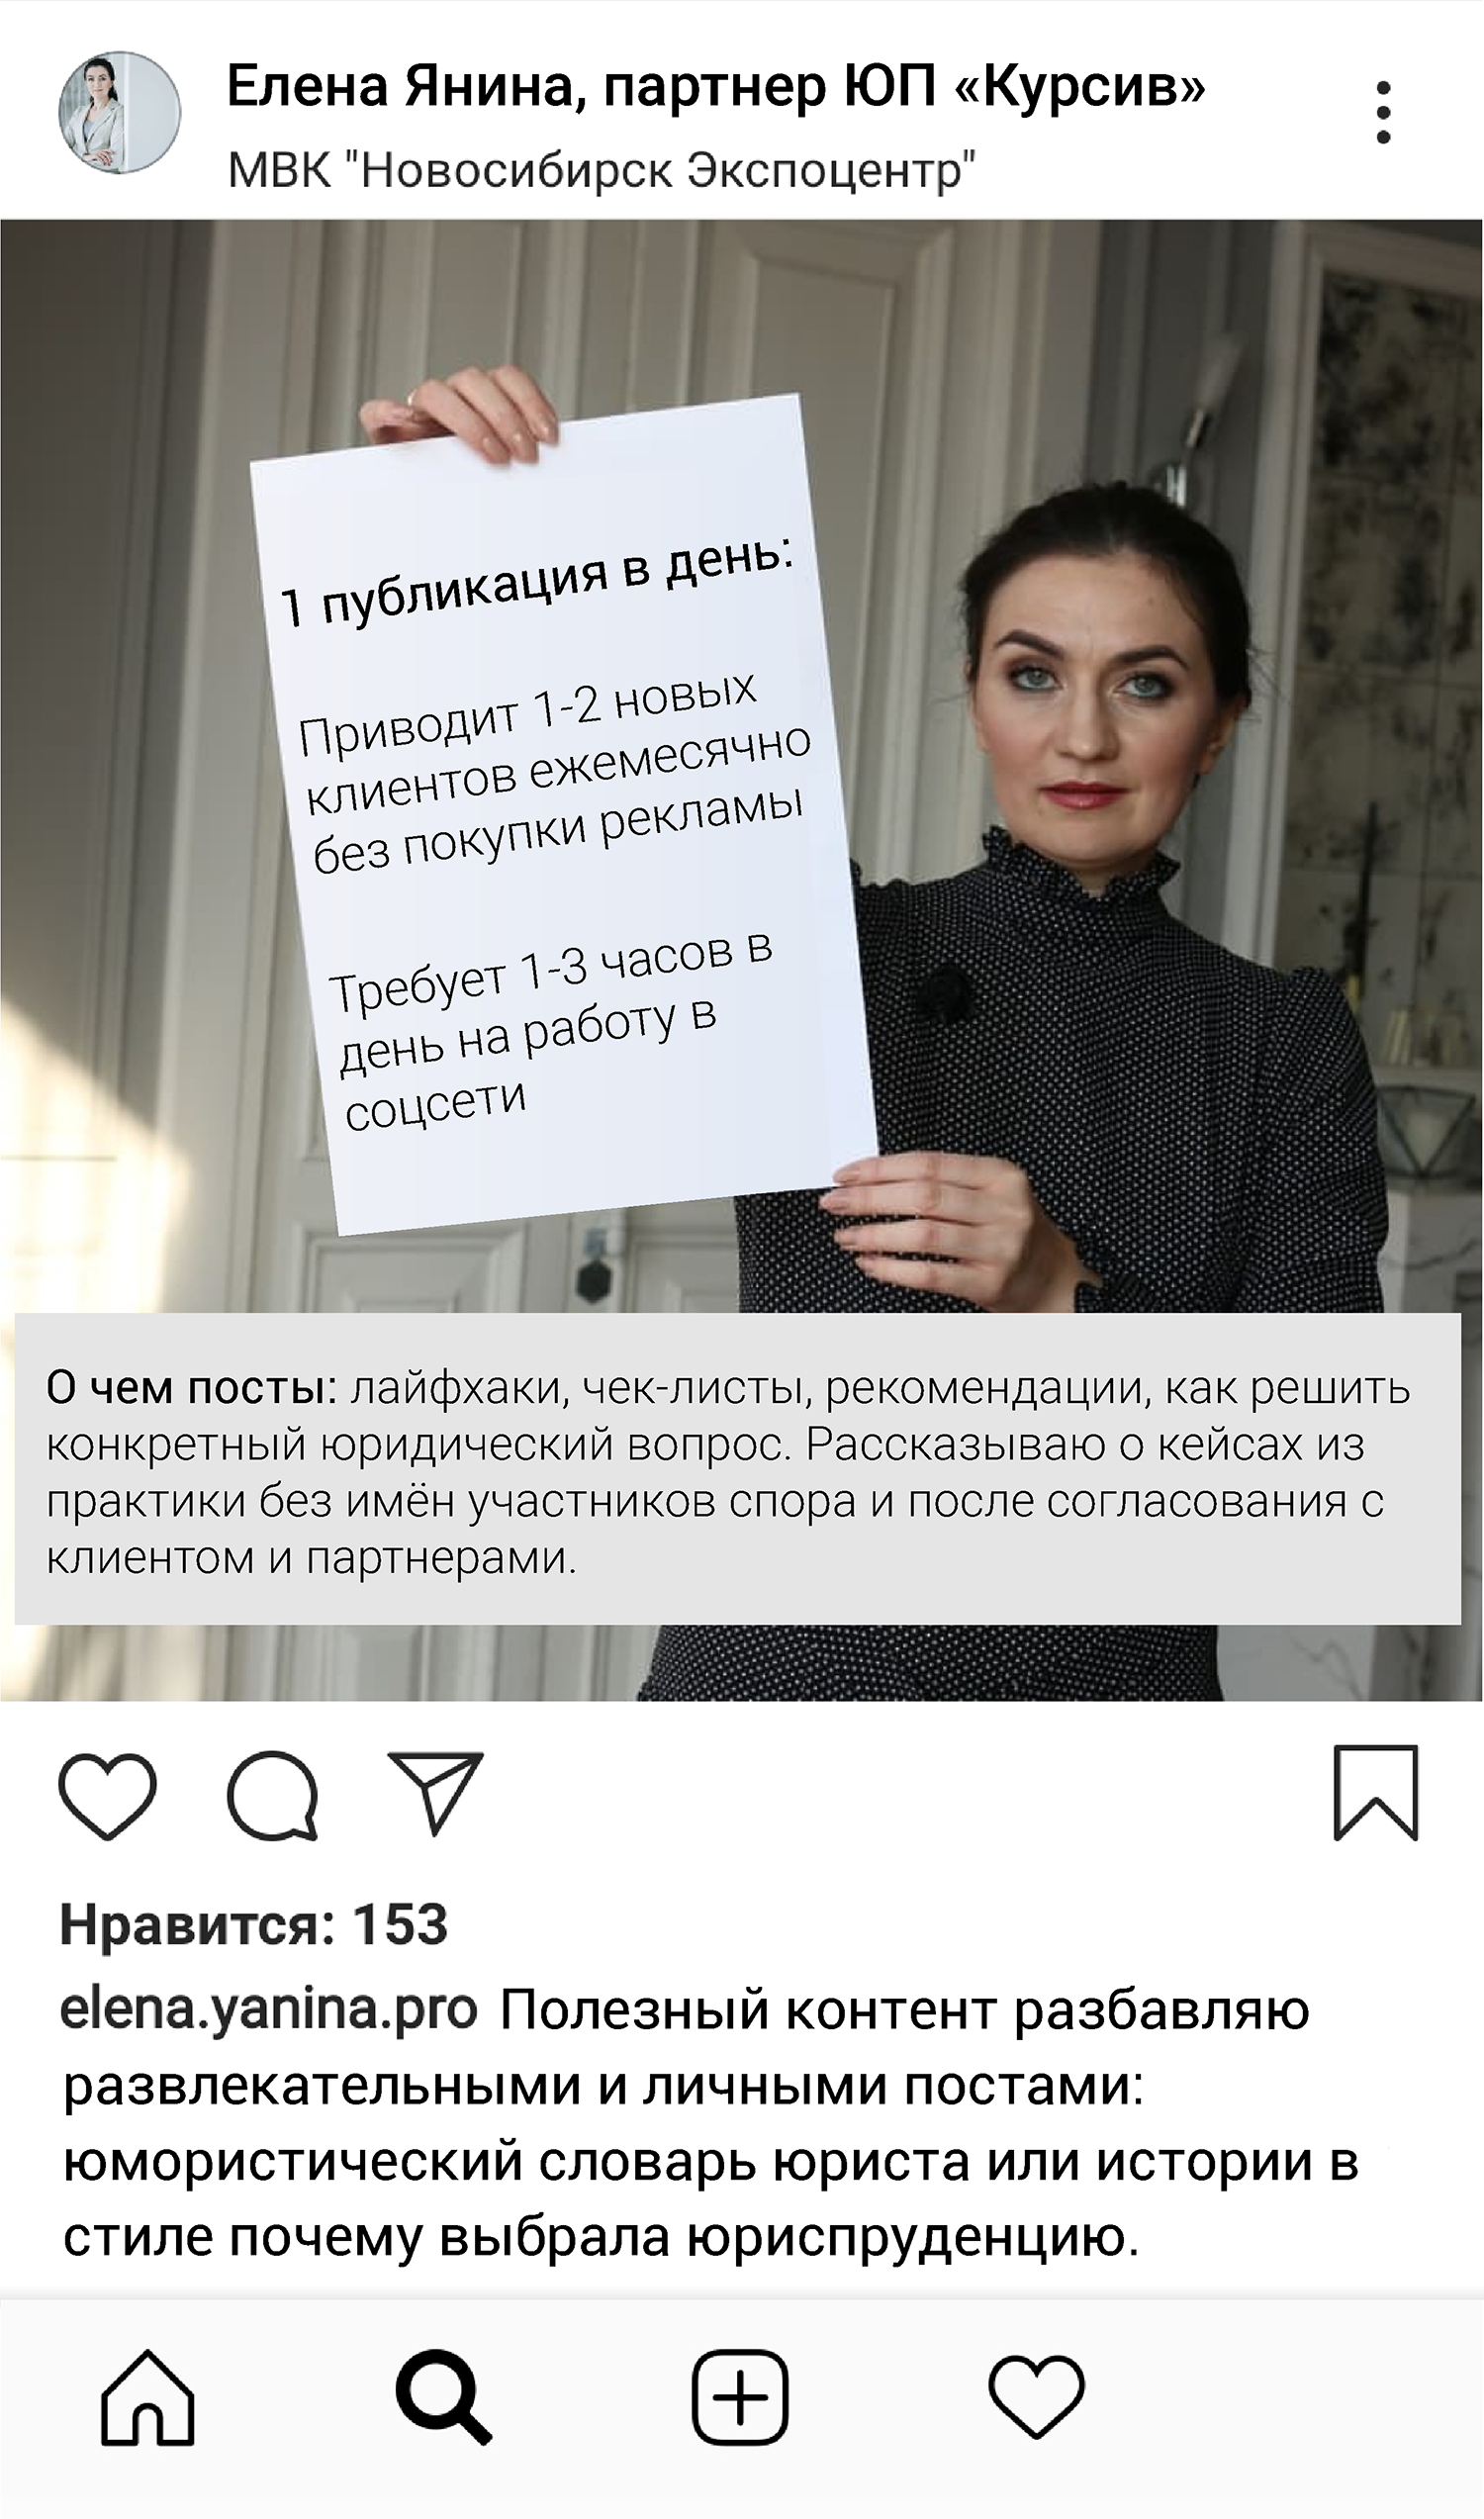 Адвокат, инхаус, судья: чего нельзя в соцсетях - новости Право.ру